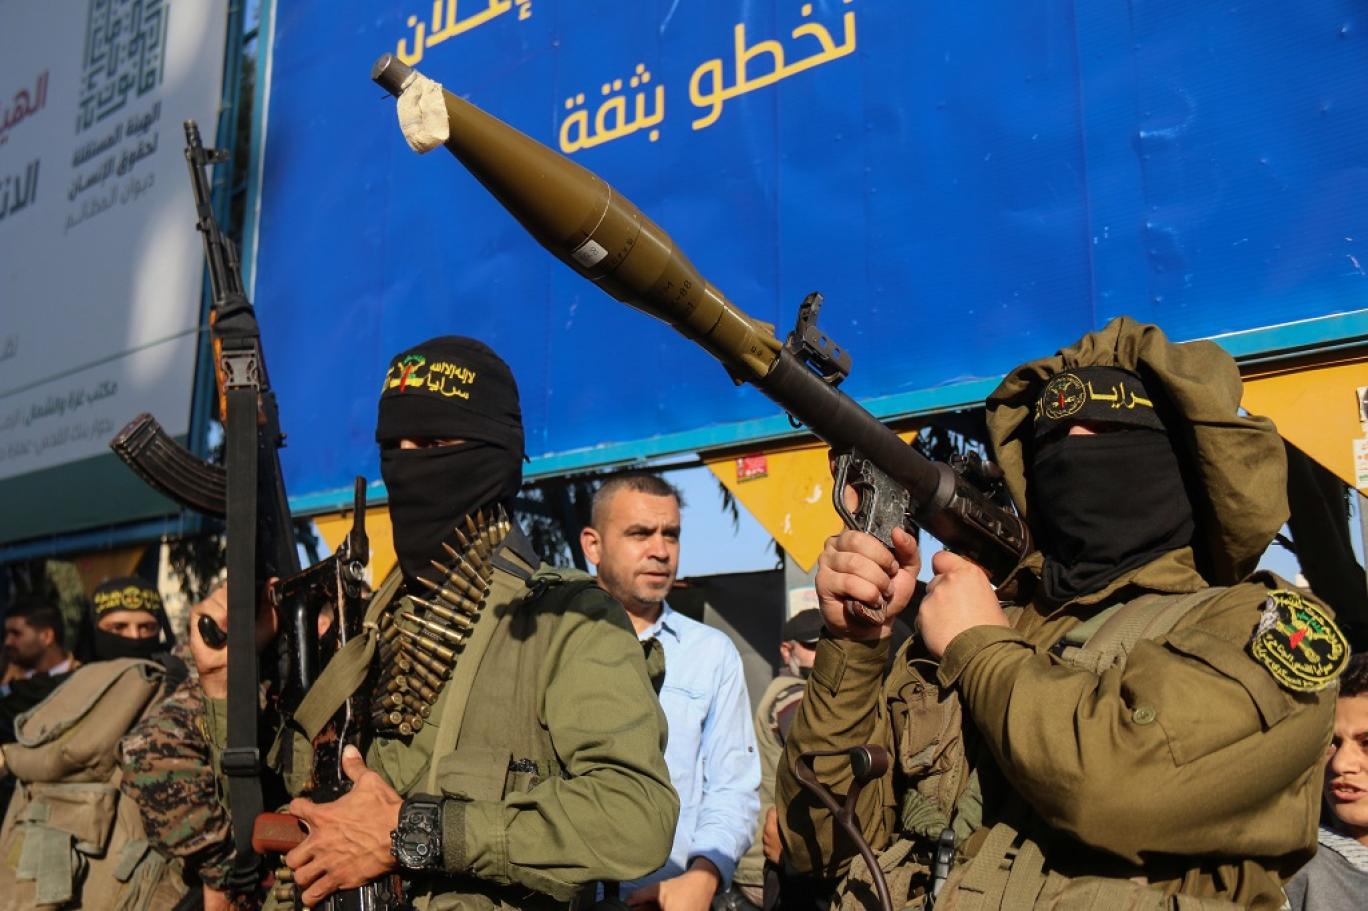 أصلها روسي وطورتها "حماس"... "ياسين 105" مفاجأة غزة لإسرائيل | اندبندنت  عربية